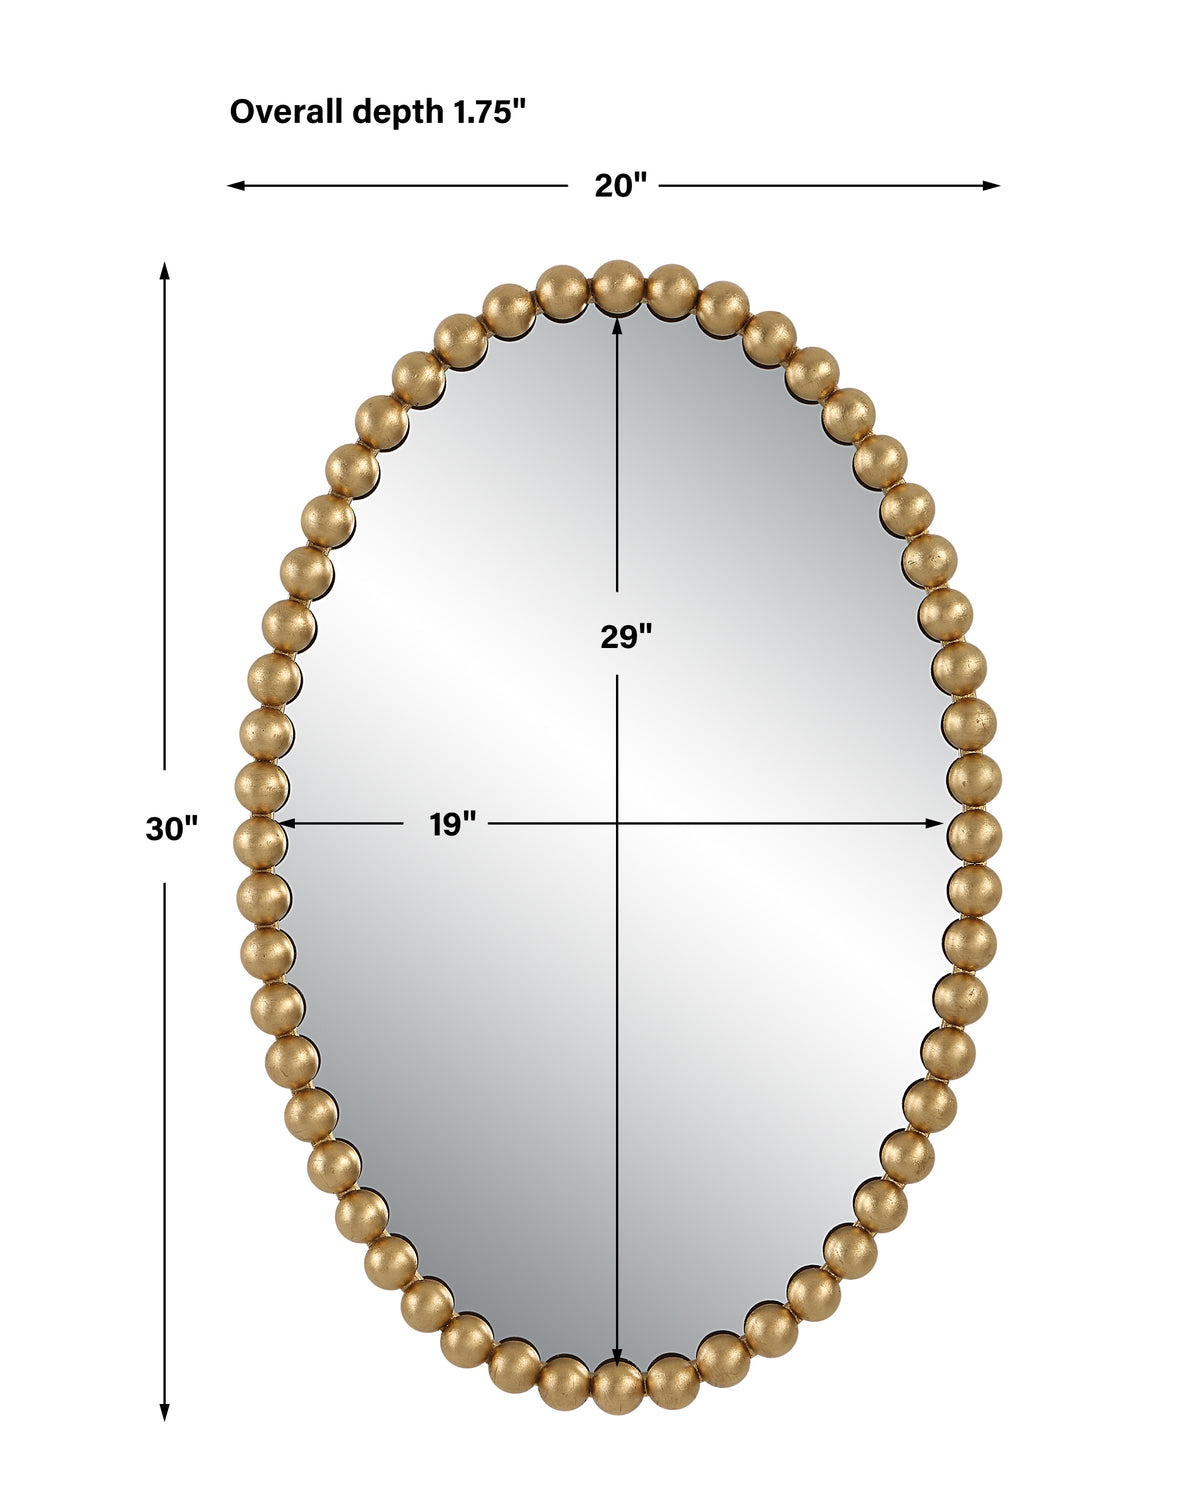 Uttermost Serna Gold Oval Mirror